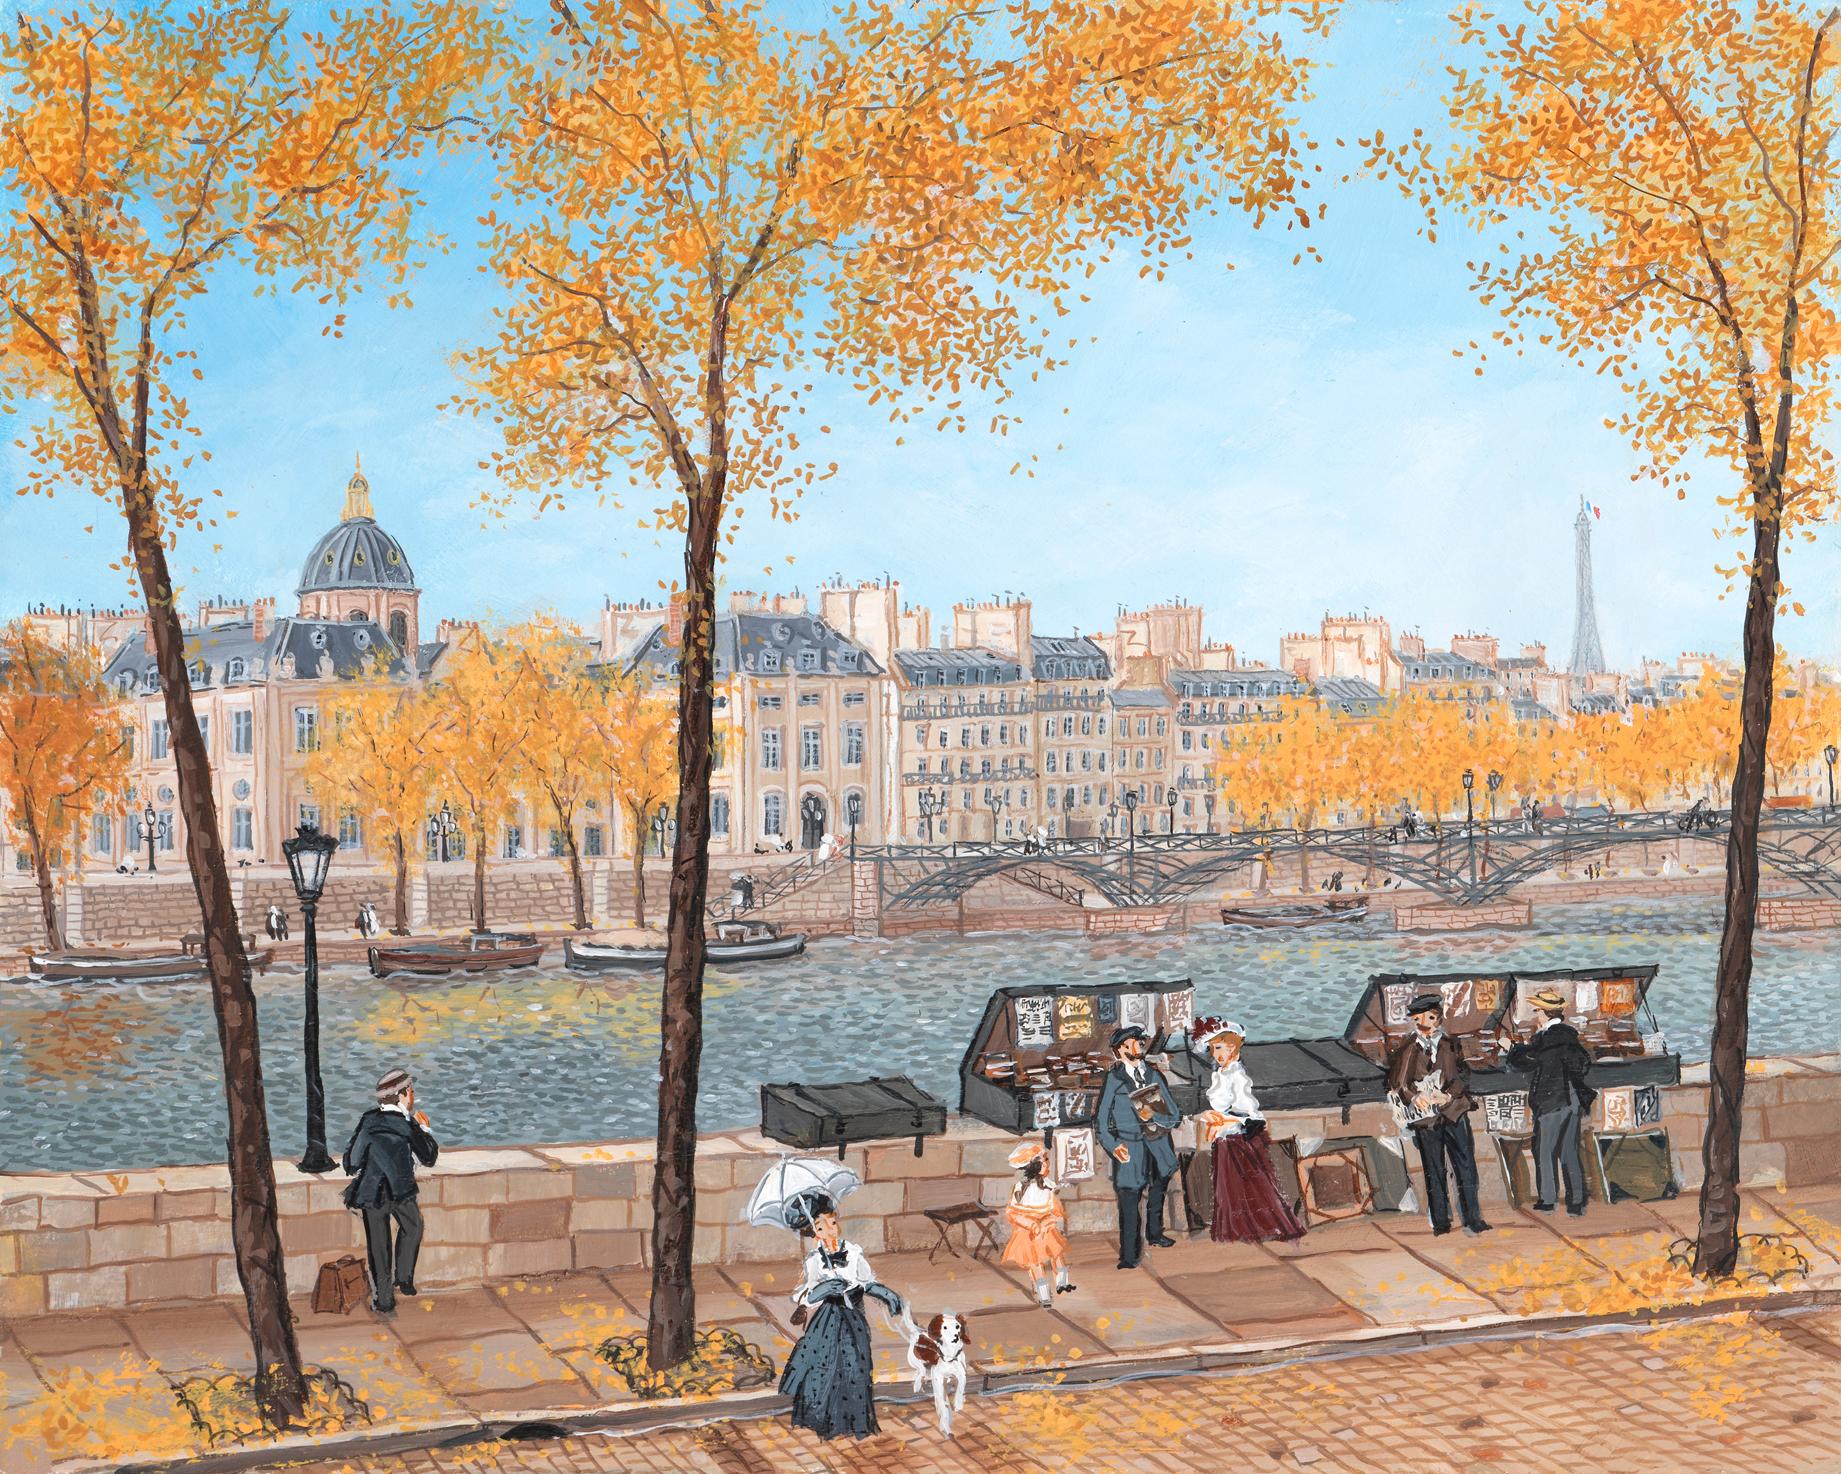 Les bouquinistes en automne - Painting by Fabienne Delacroix